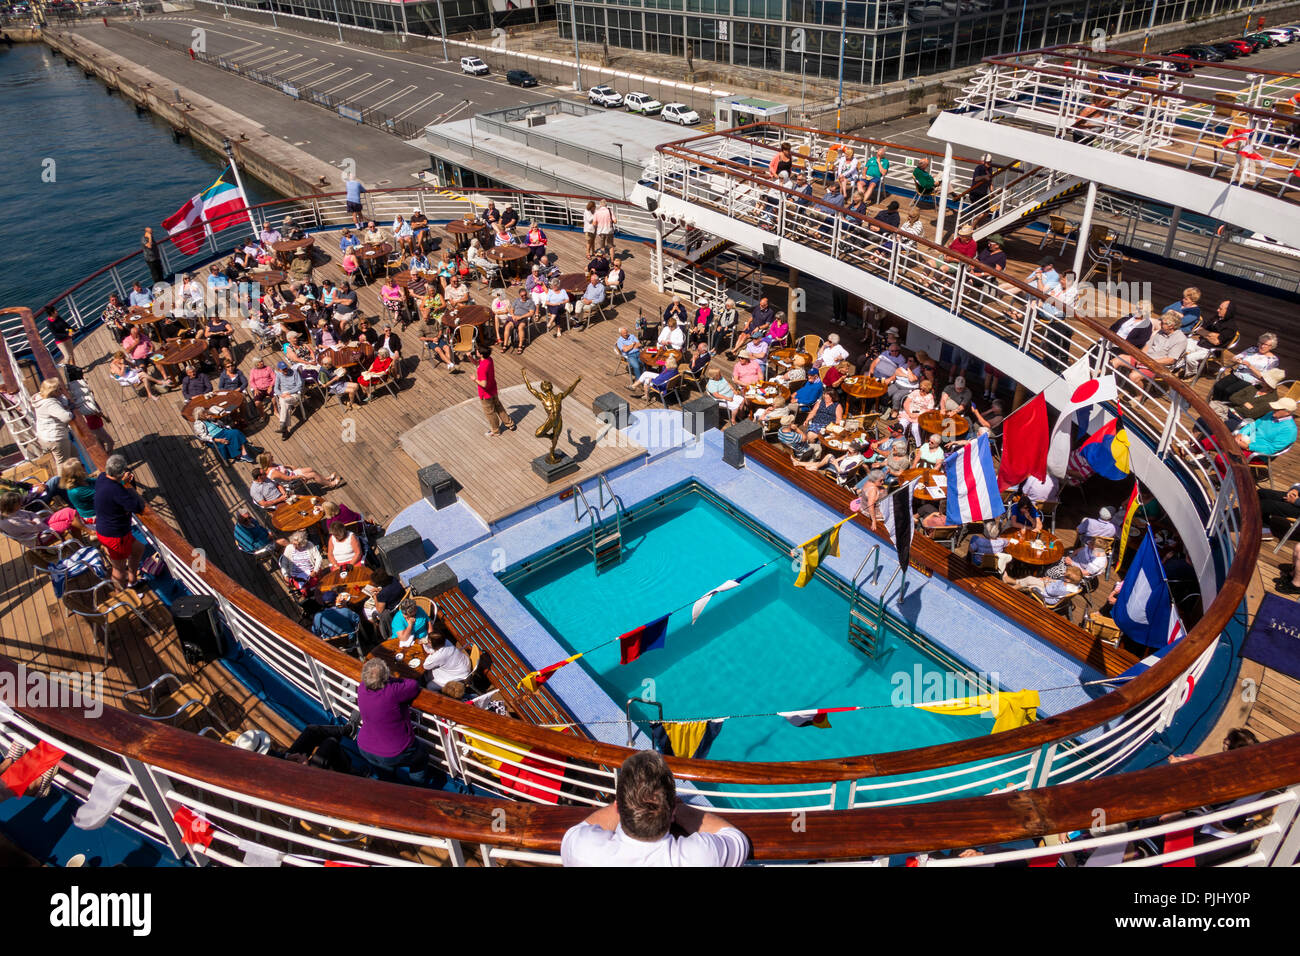 Spanien, Galizien, A Coruña, MV Marco Polo Passagiere am Pool auf dem Deck im Hafen unterhalten zu werden Stockfoto